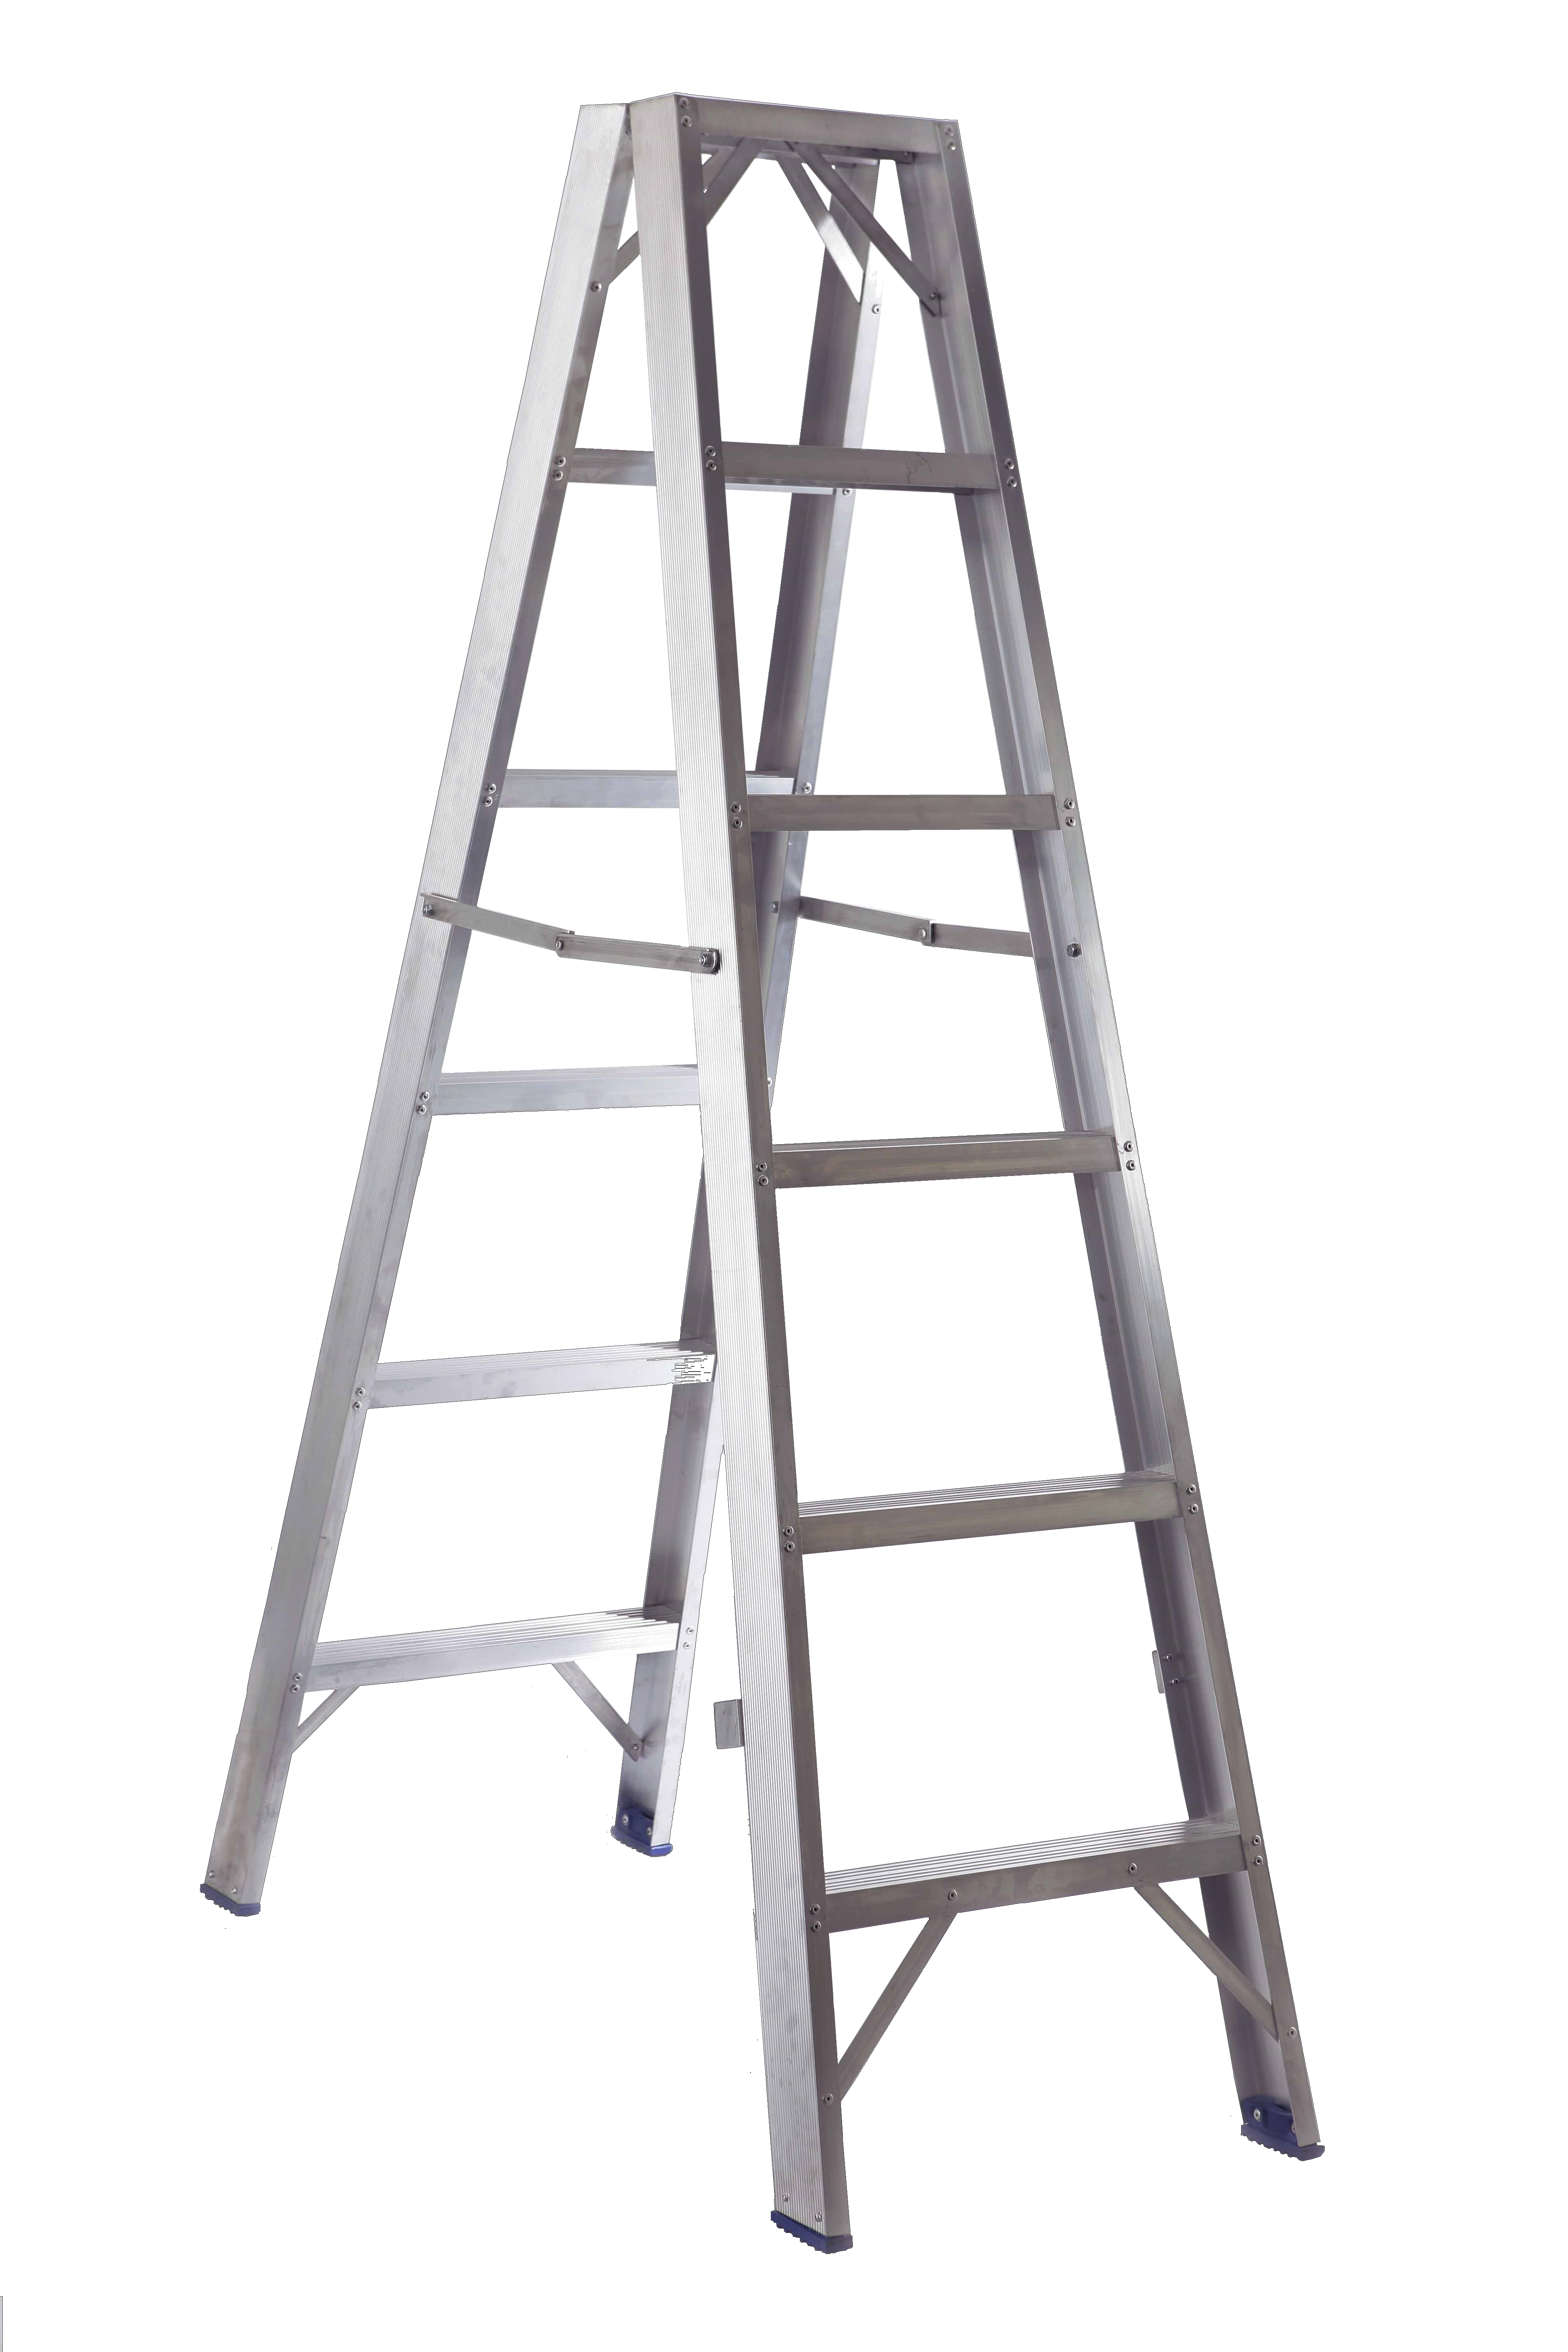 indutrial alluminium ladders for Chores png #29295